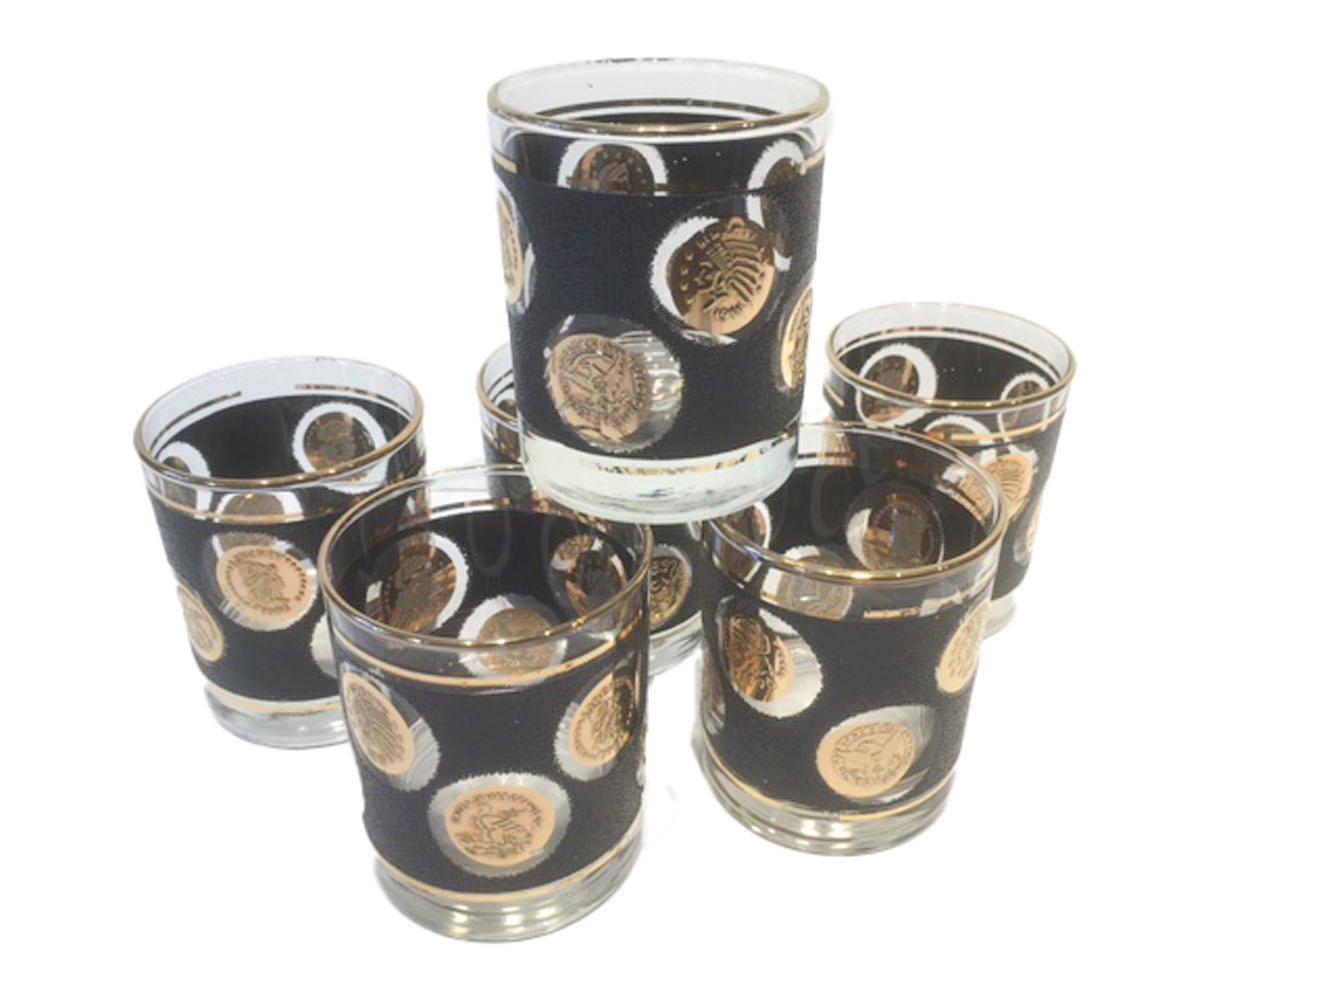 Vaisselle de bar vintage de Libbey avec des pièces de monnaie en or sur un fond noir caillouteux. L'ensemble de douze pièces comprend 6 verres à whisky et 6 verres à whisky/rocks.

Mesures : 6 - Boule haute : 5